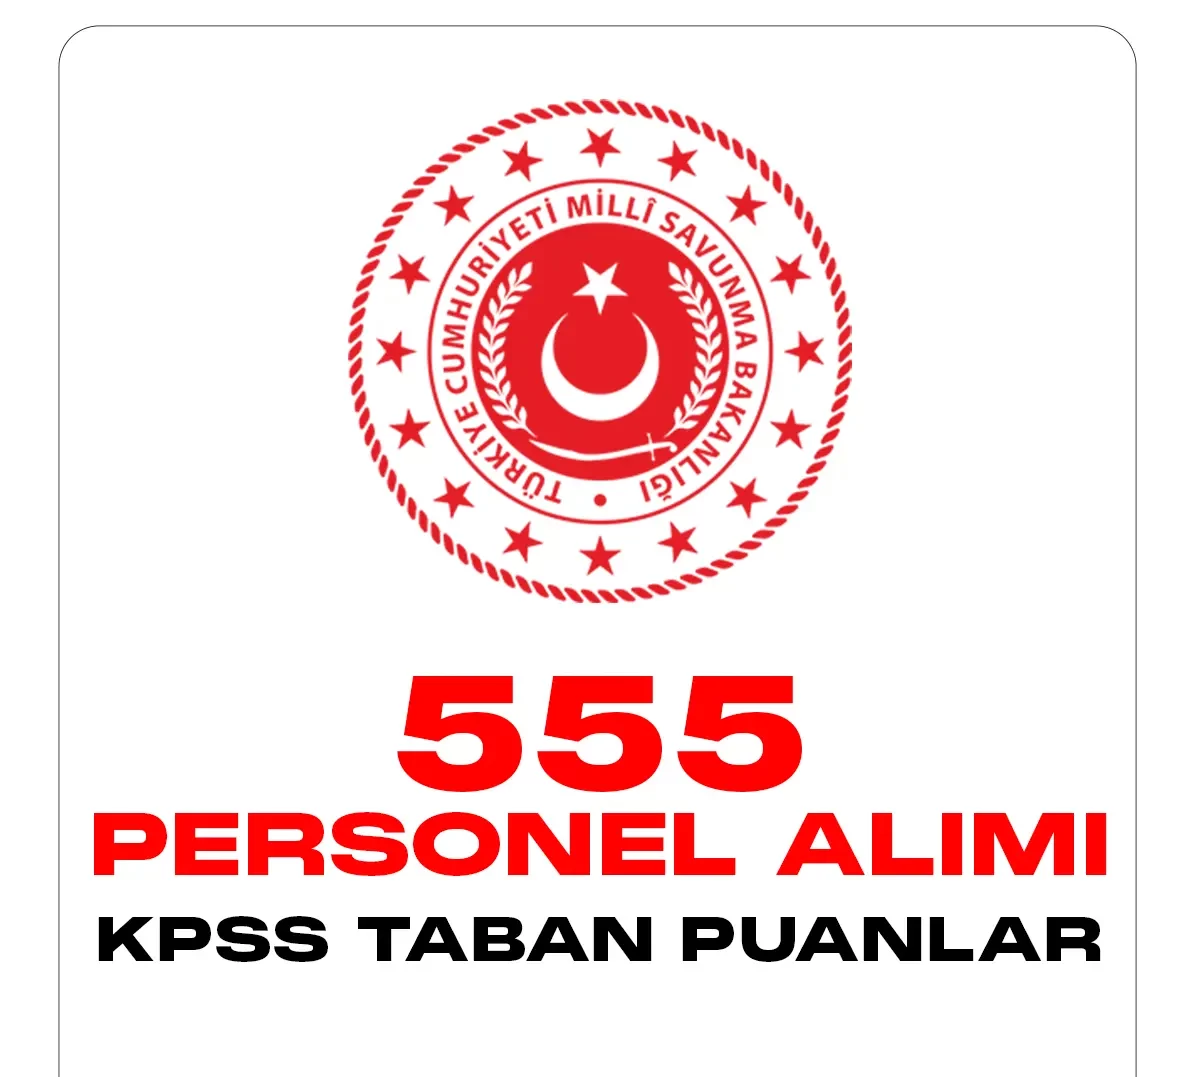 MSB 555 personel alımı KPSS taban puanları ve sonuçları